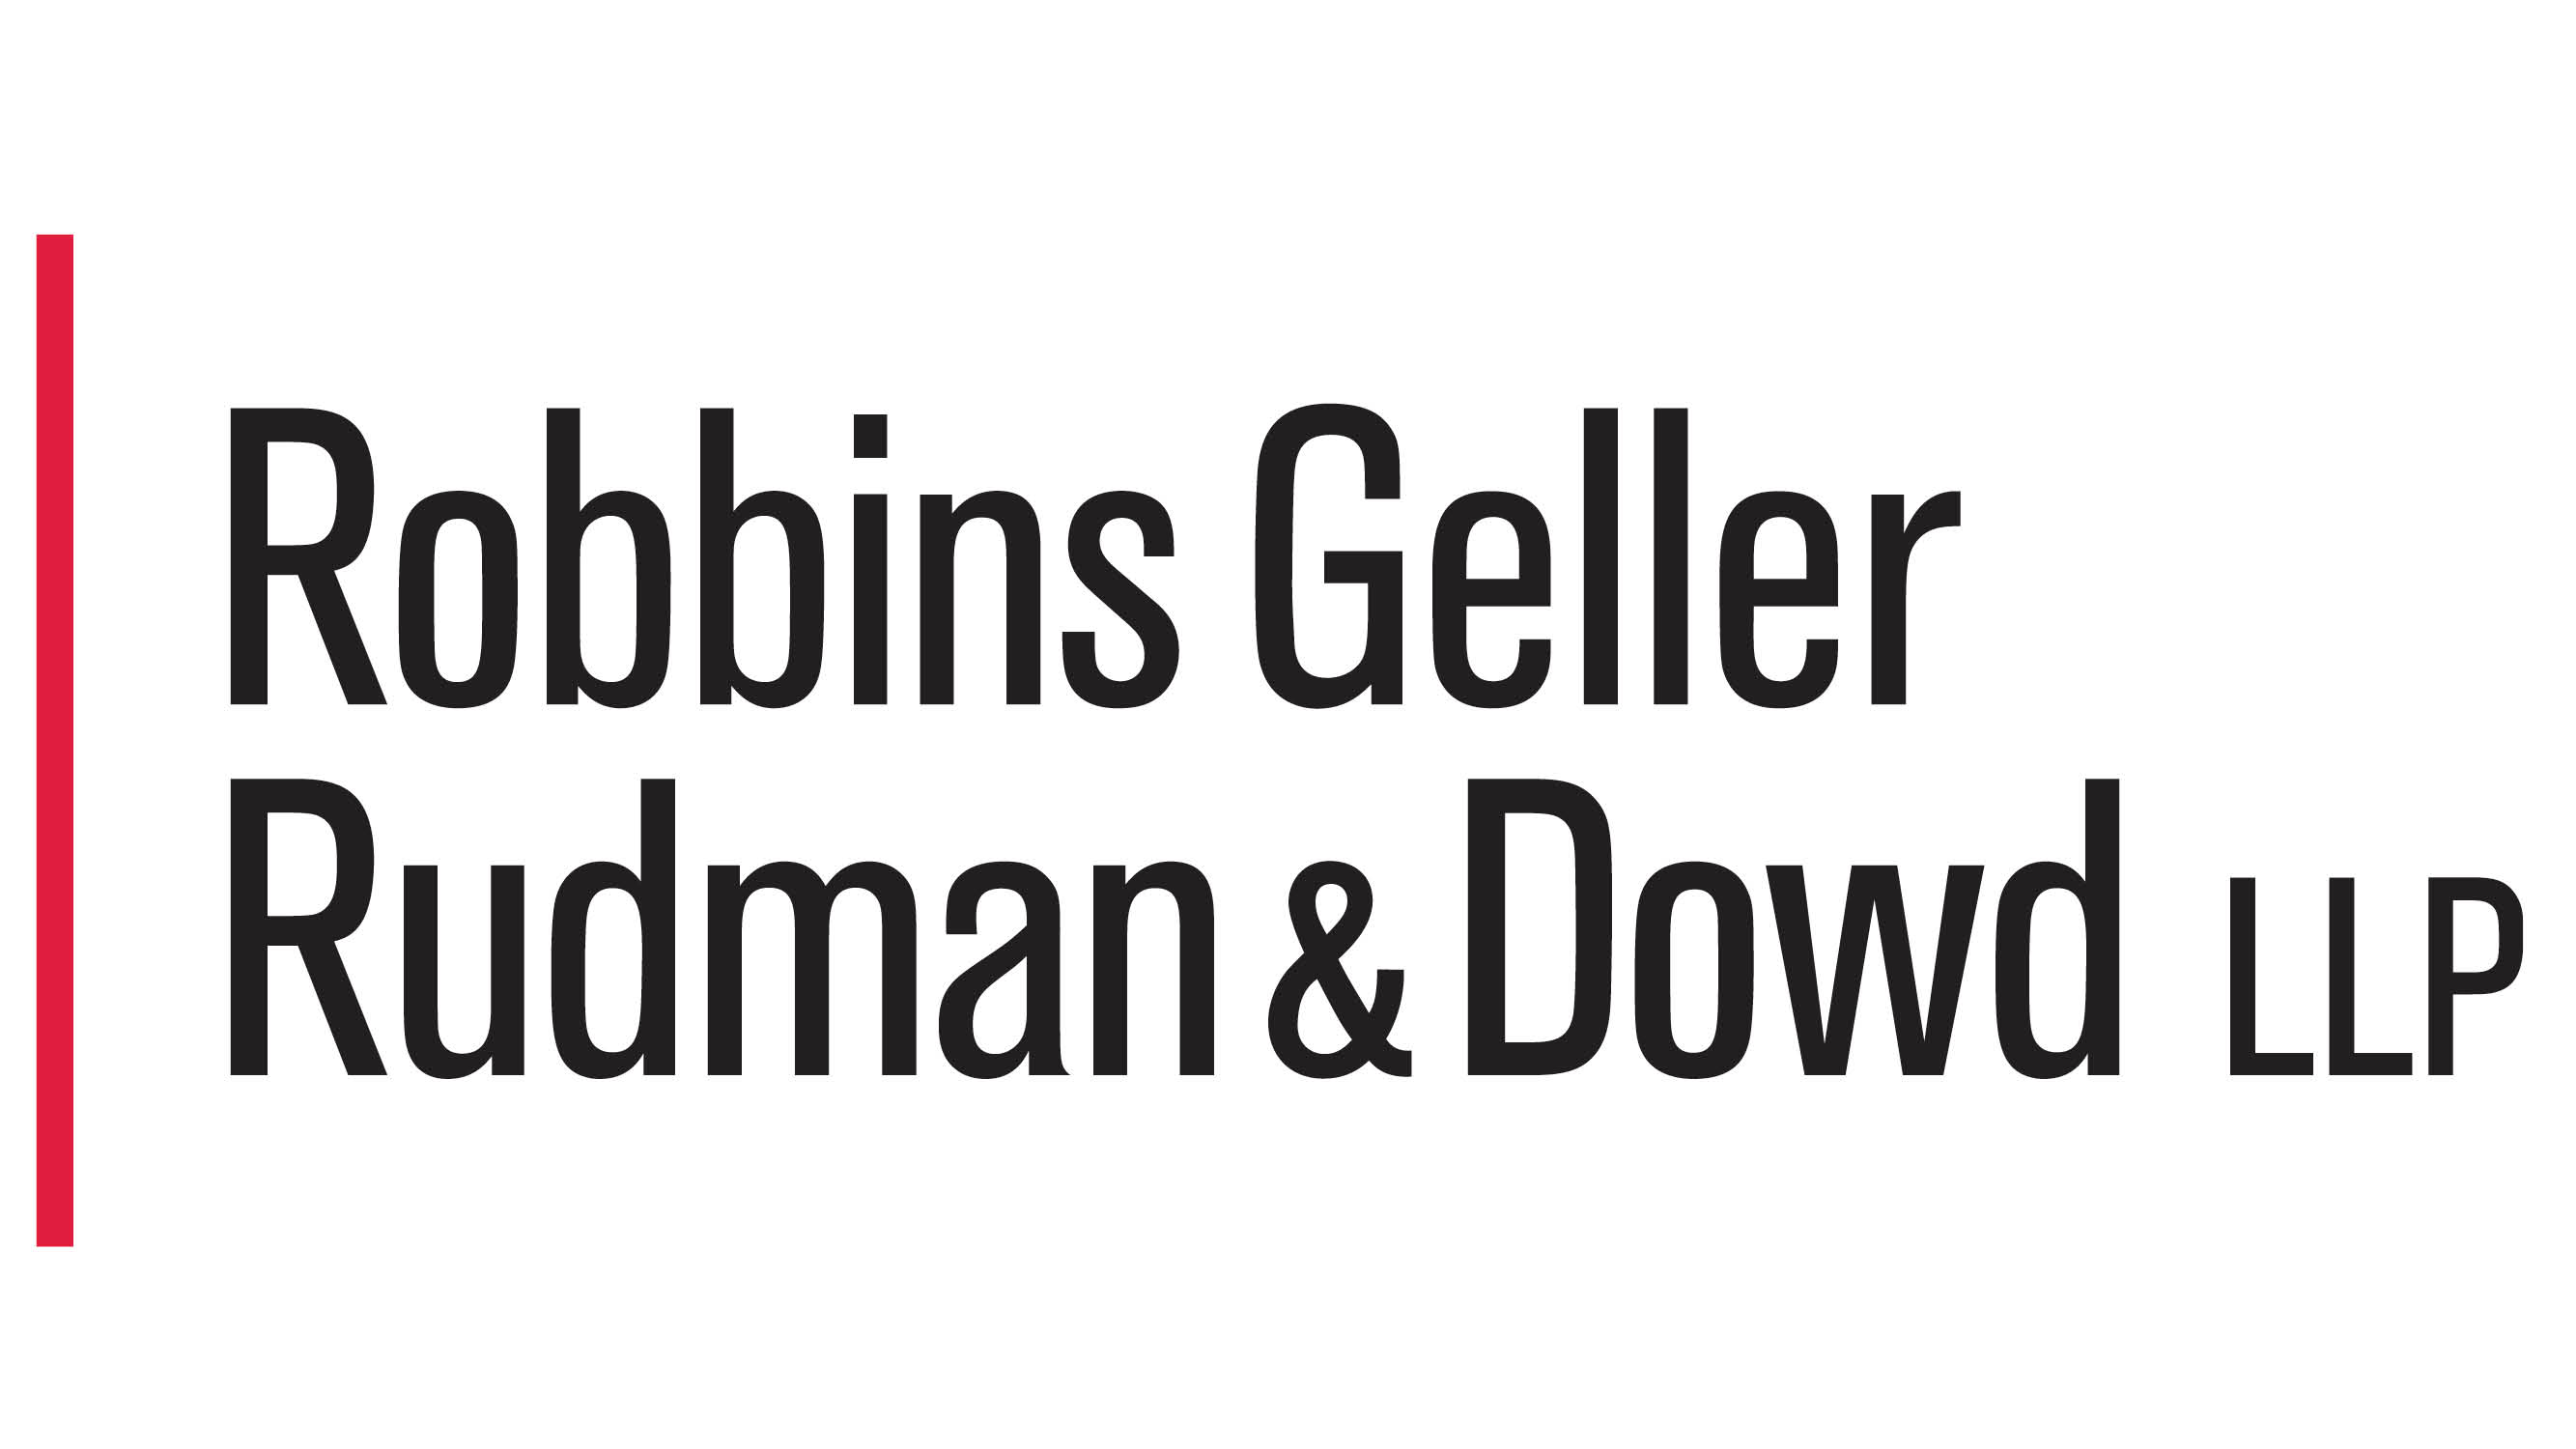 TUESDAY INVESTOR DEADLINE: Robbins Geller Rudman & Dowd LLP - GlobeNewswire